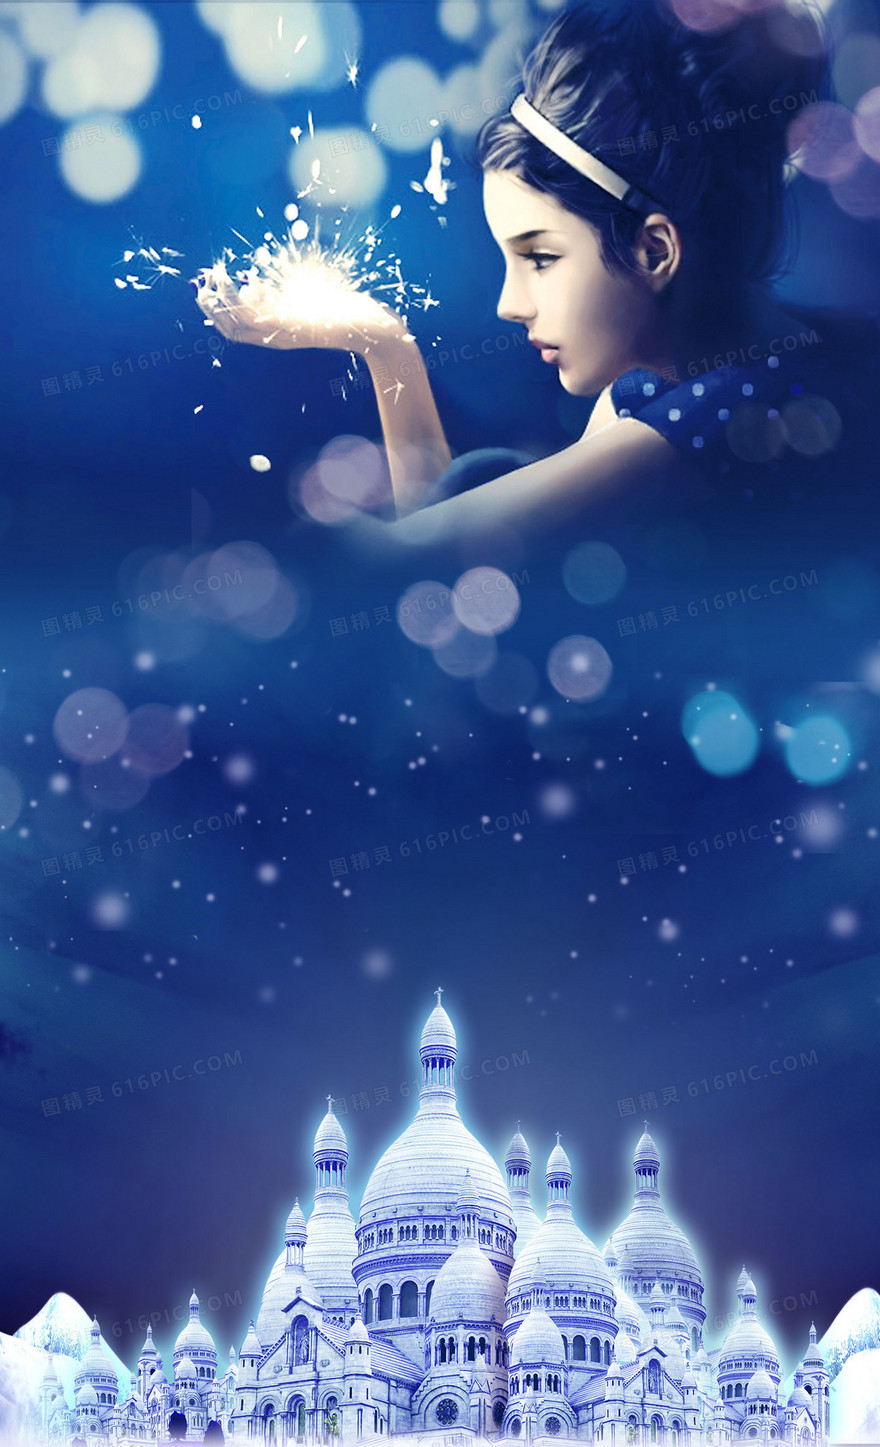 梦幻蓝色城堡海报背景素材